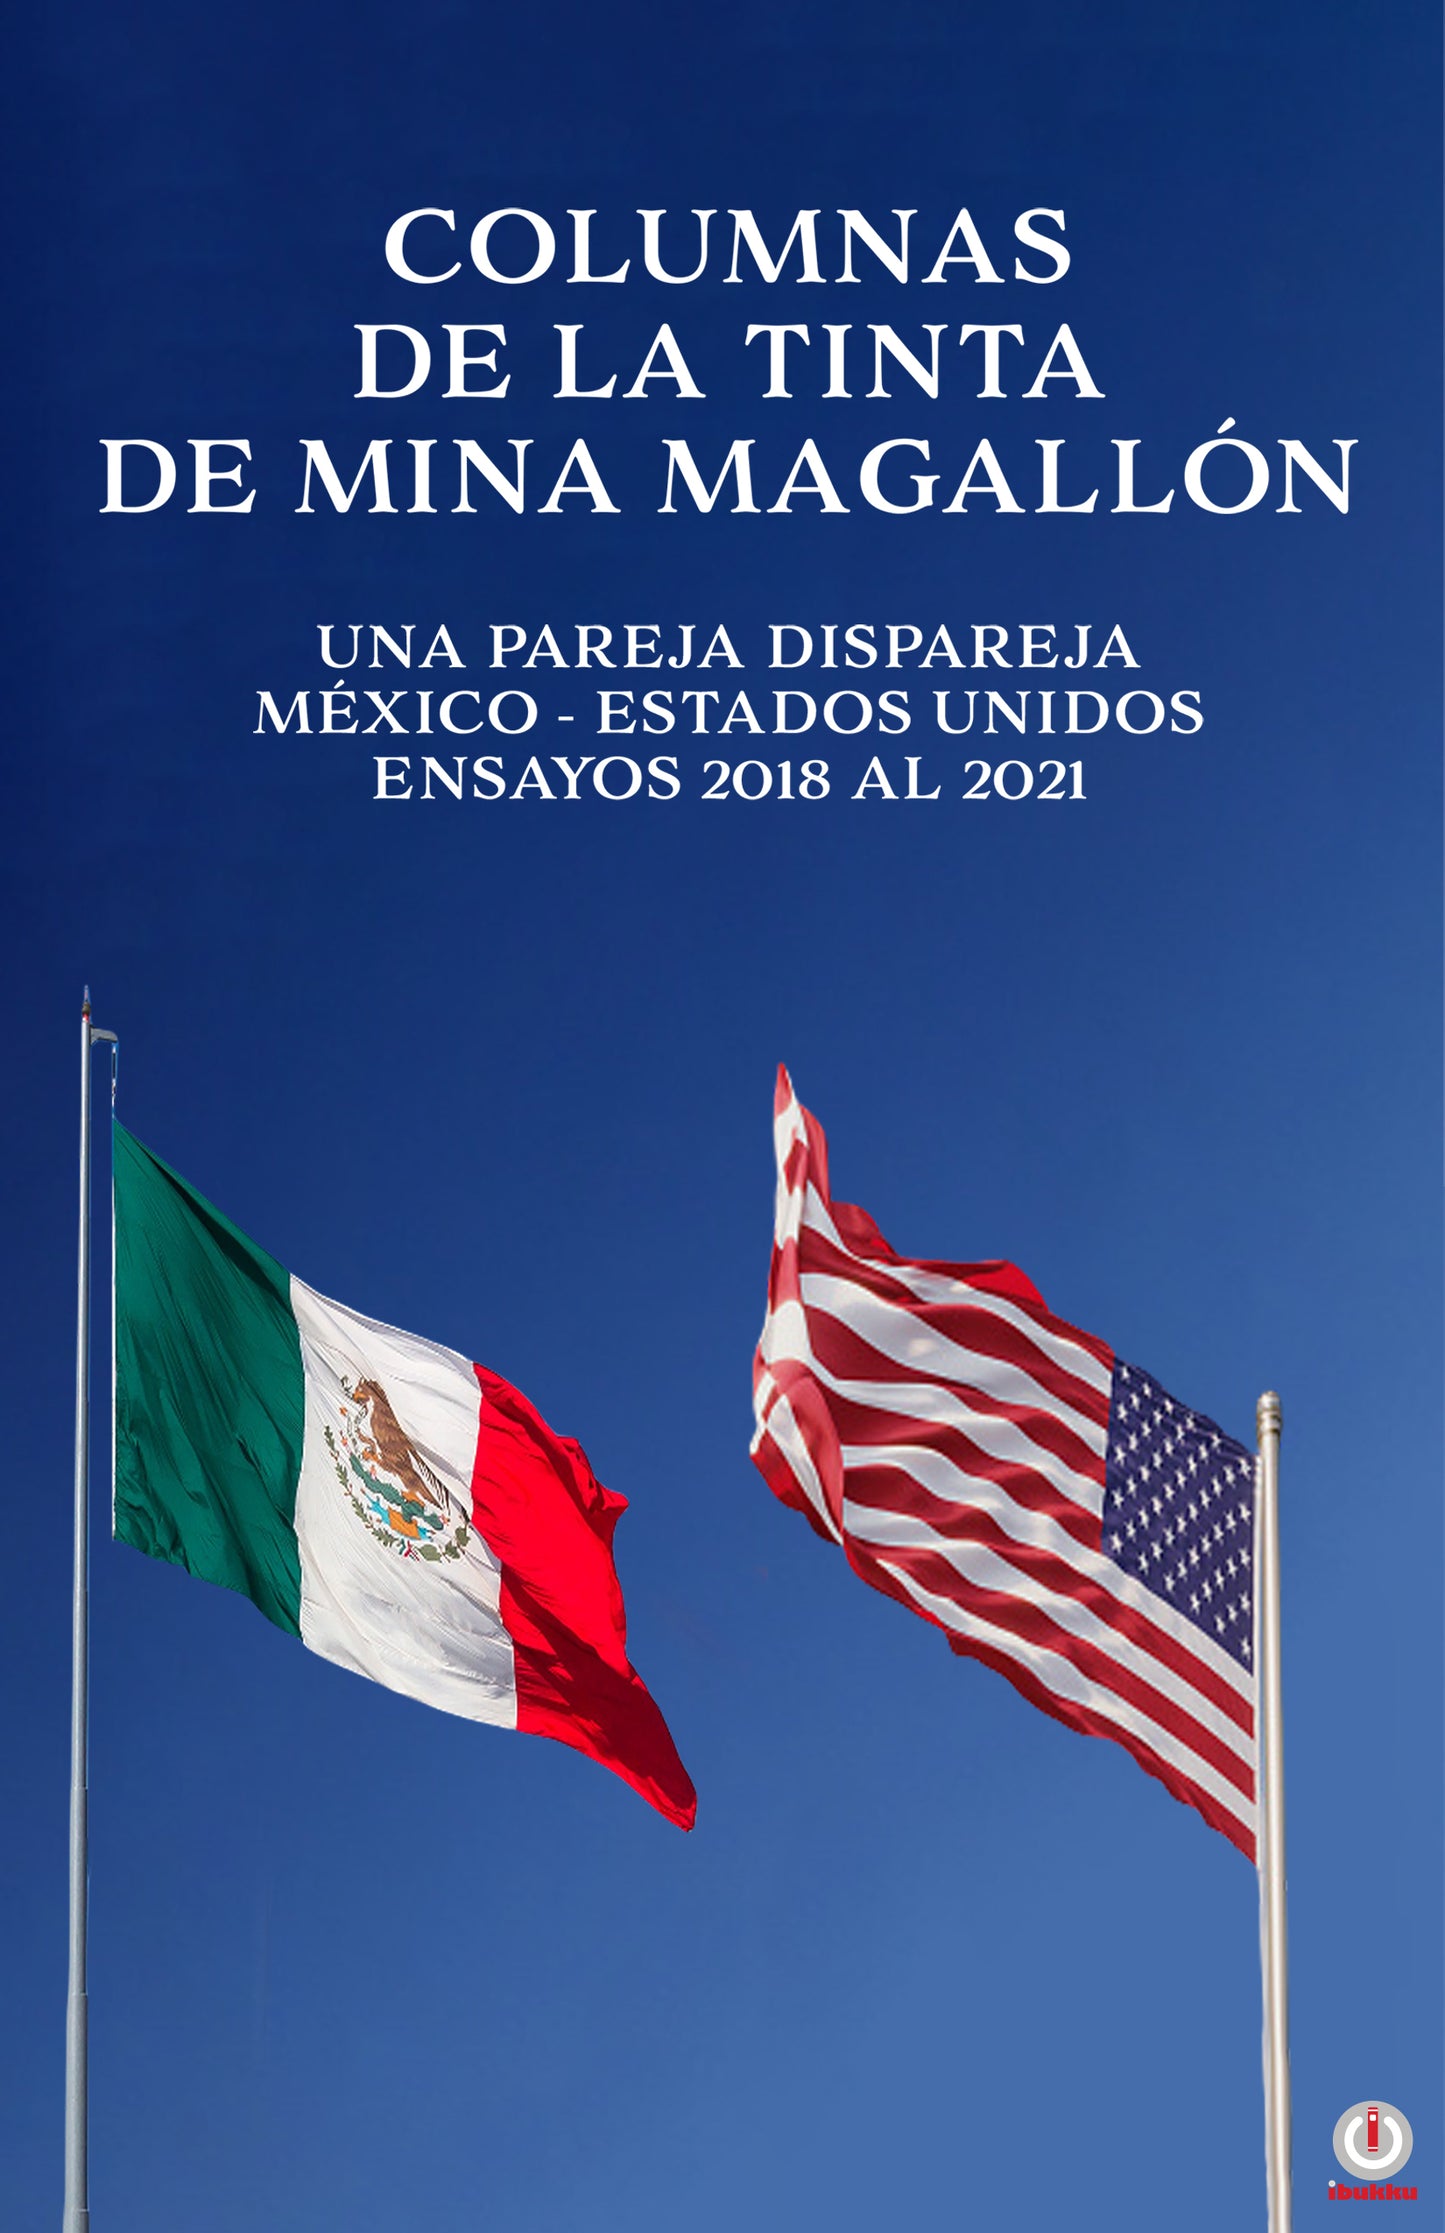 Columnas de la tinta de Mina Magallón: Una pareja dispareja México-Estados Unidos Ensayos 2018 al 2021